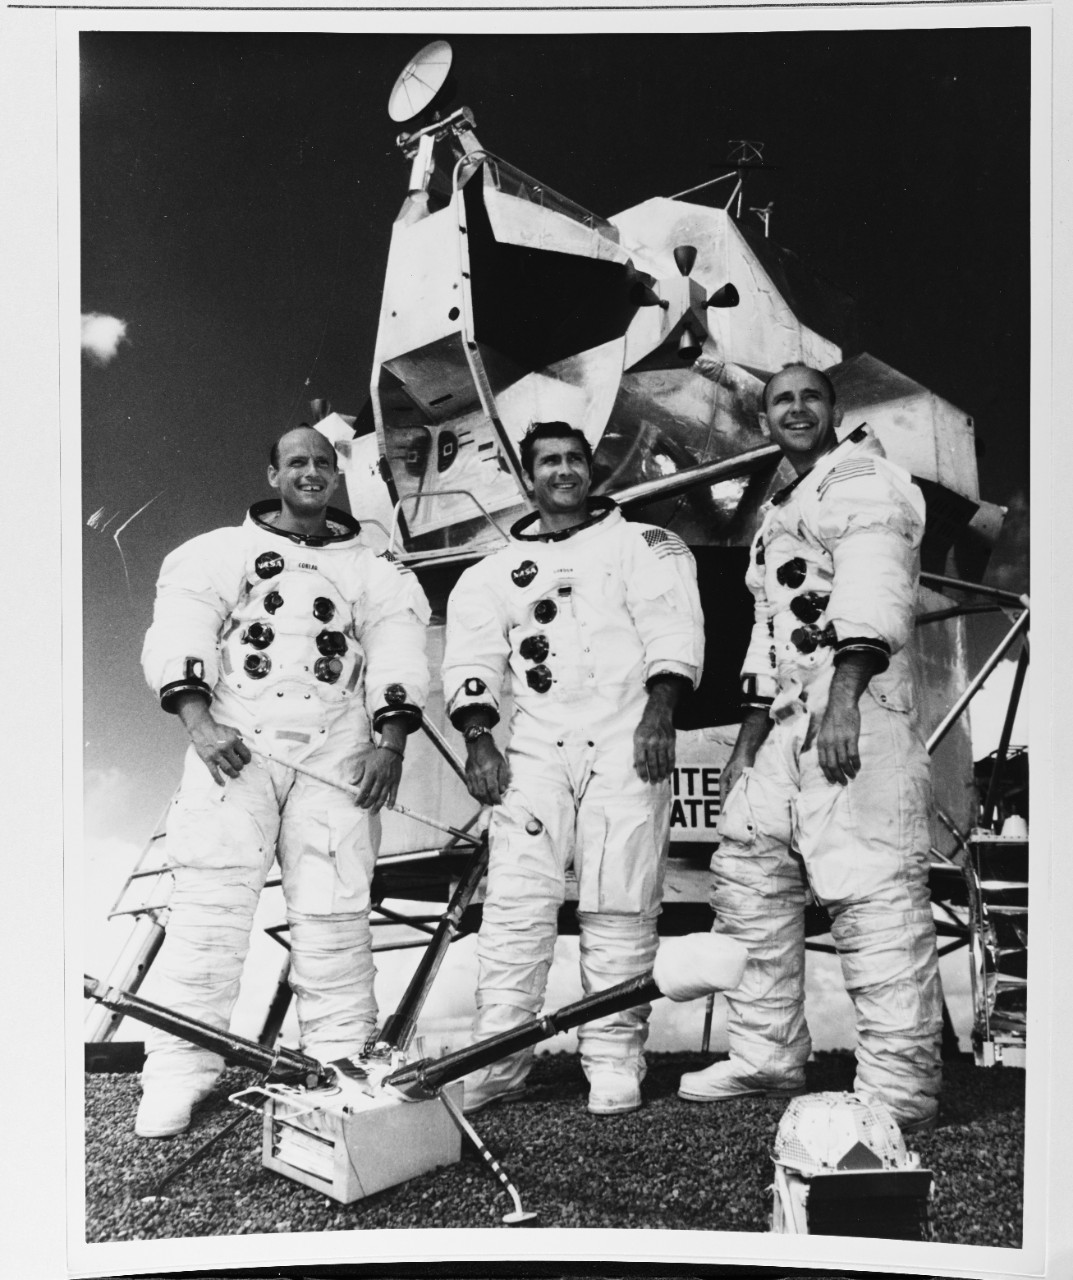 The Apollo Twelve astronauts